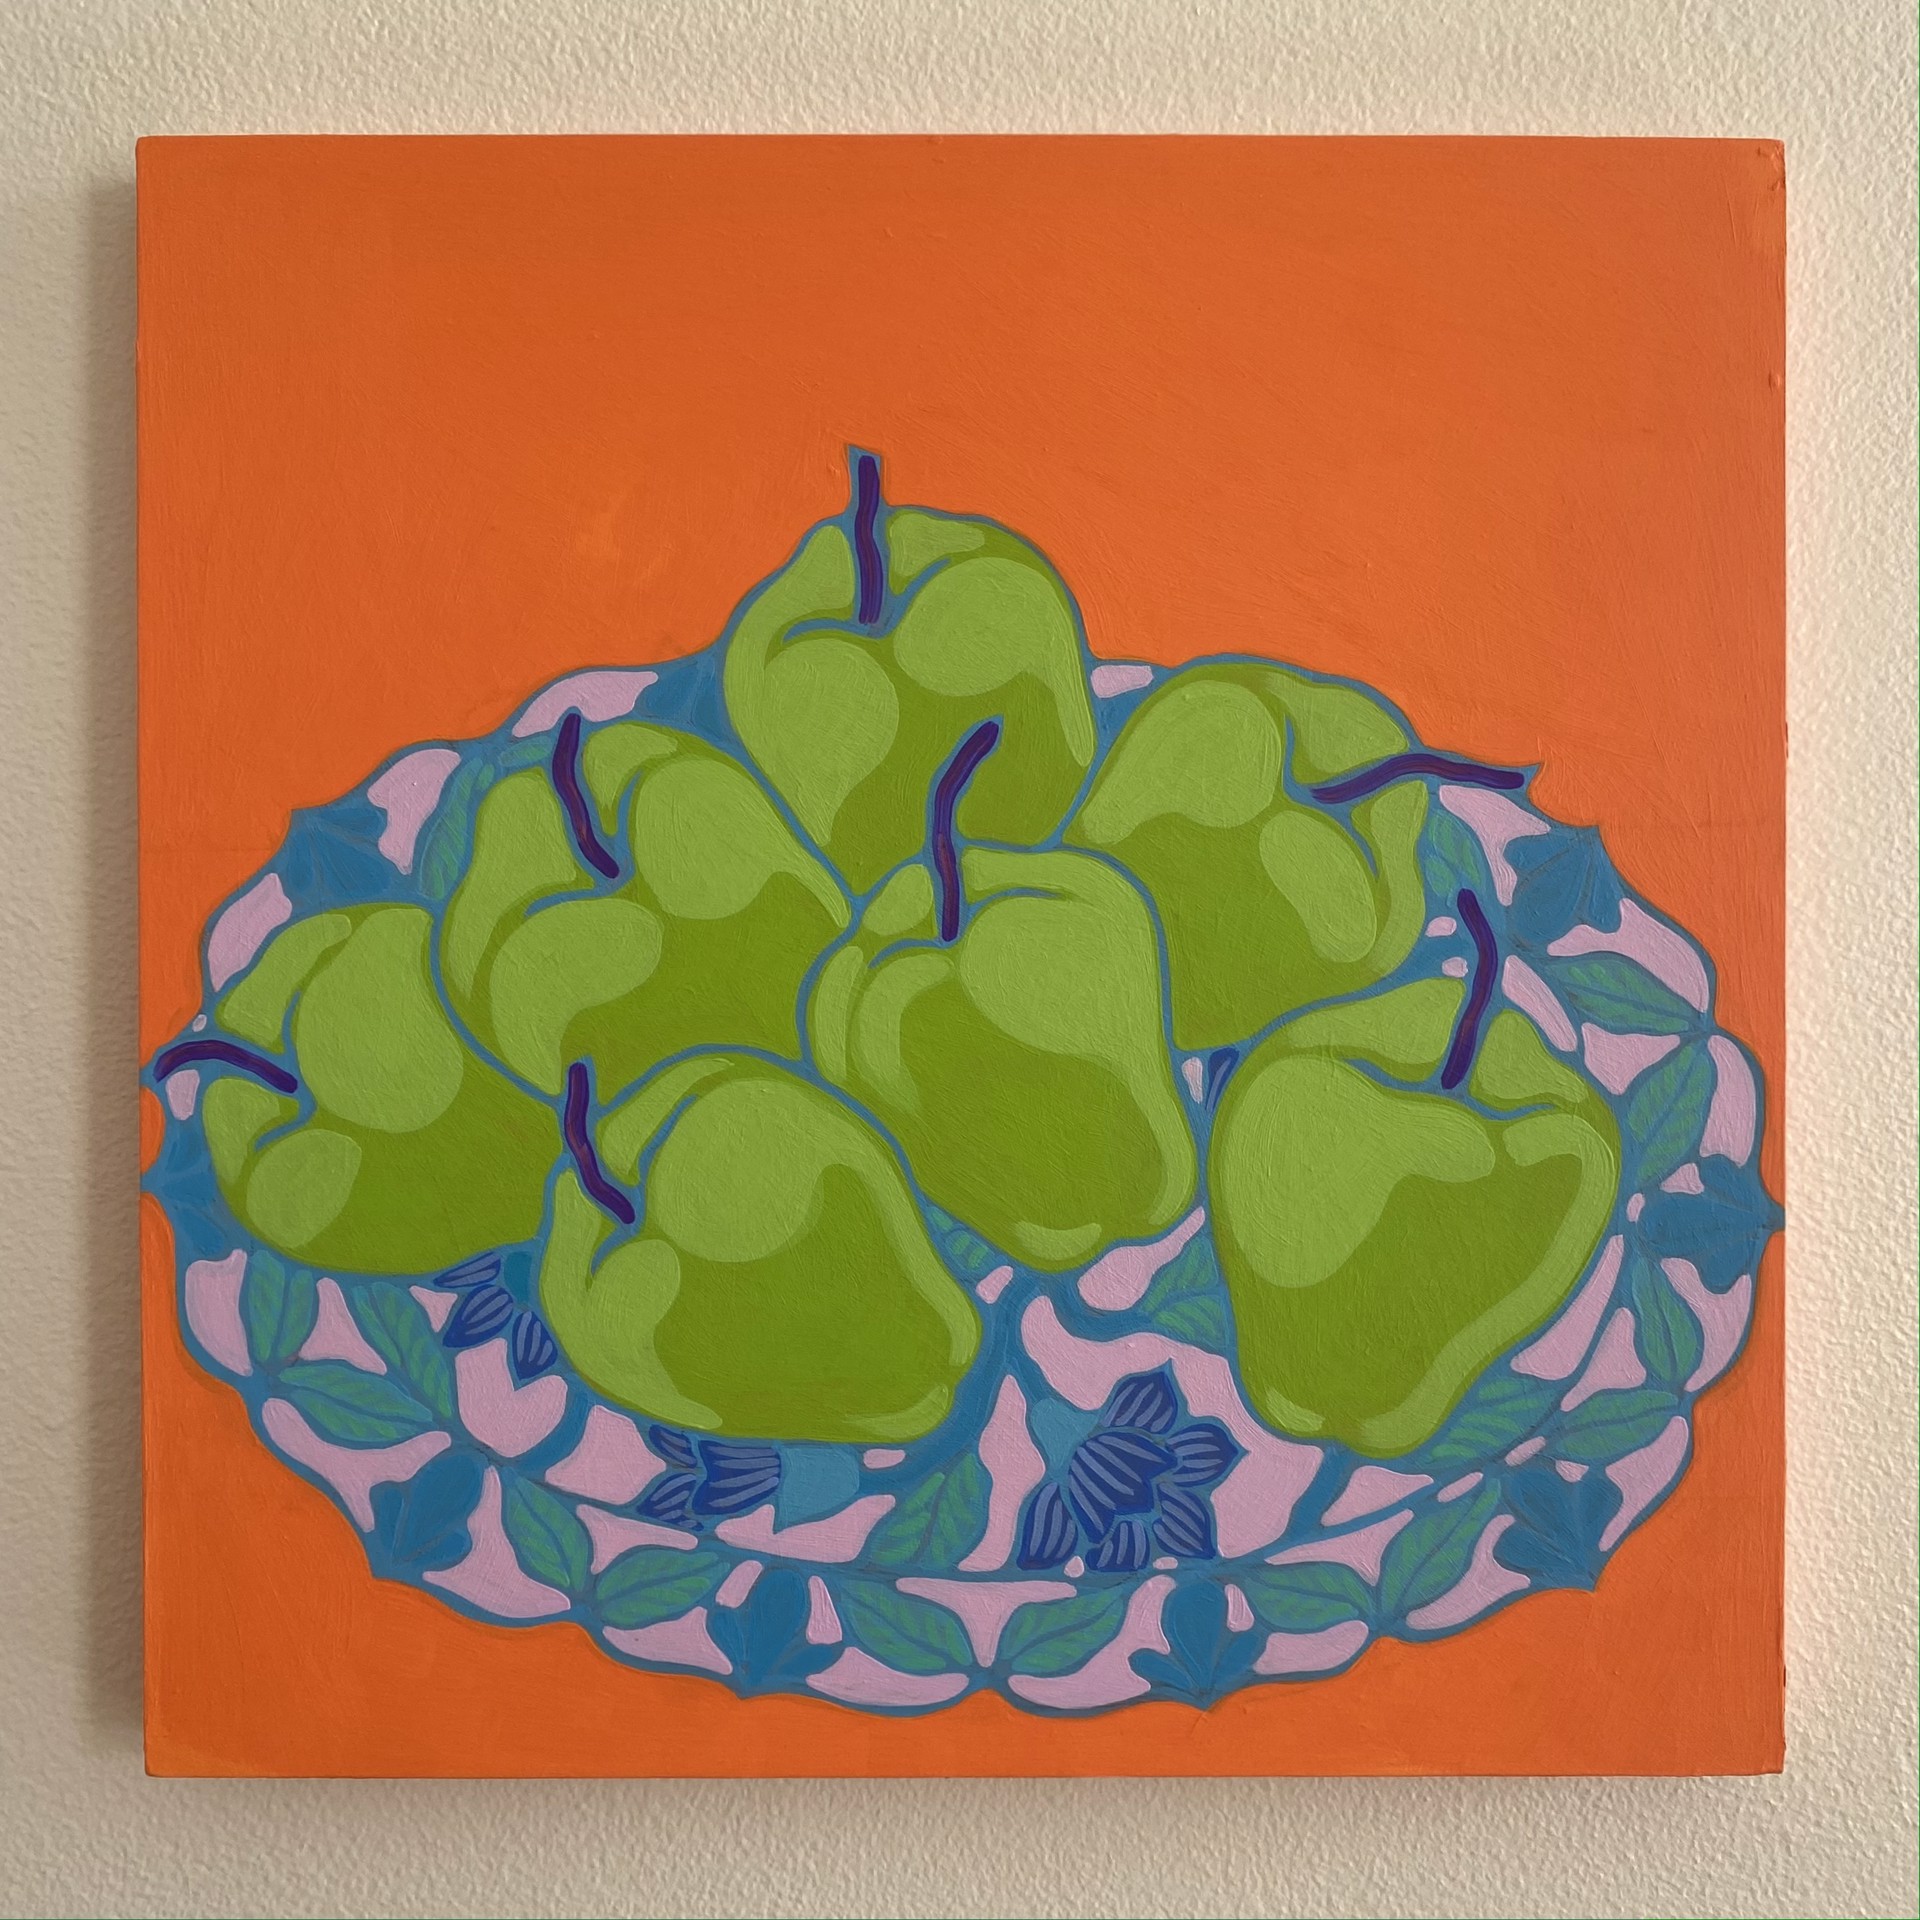 Seven Apples on Orange by Sarah Ingraham